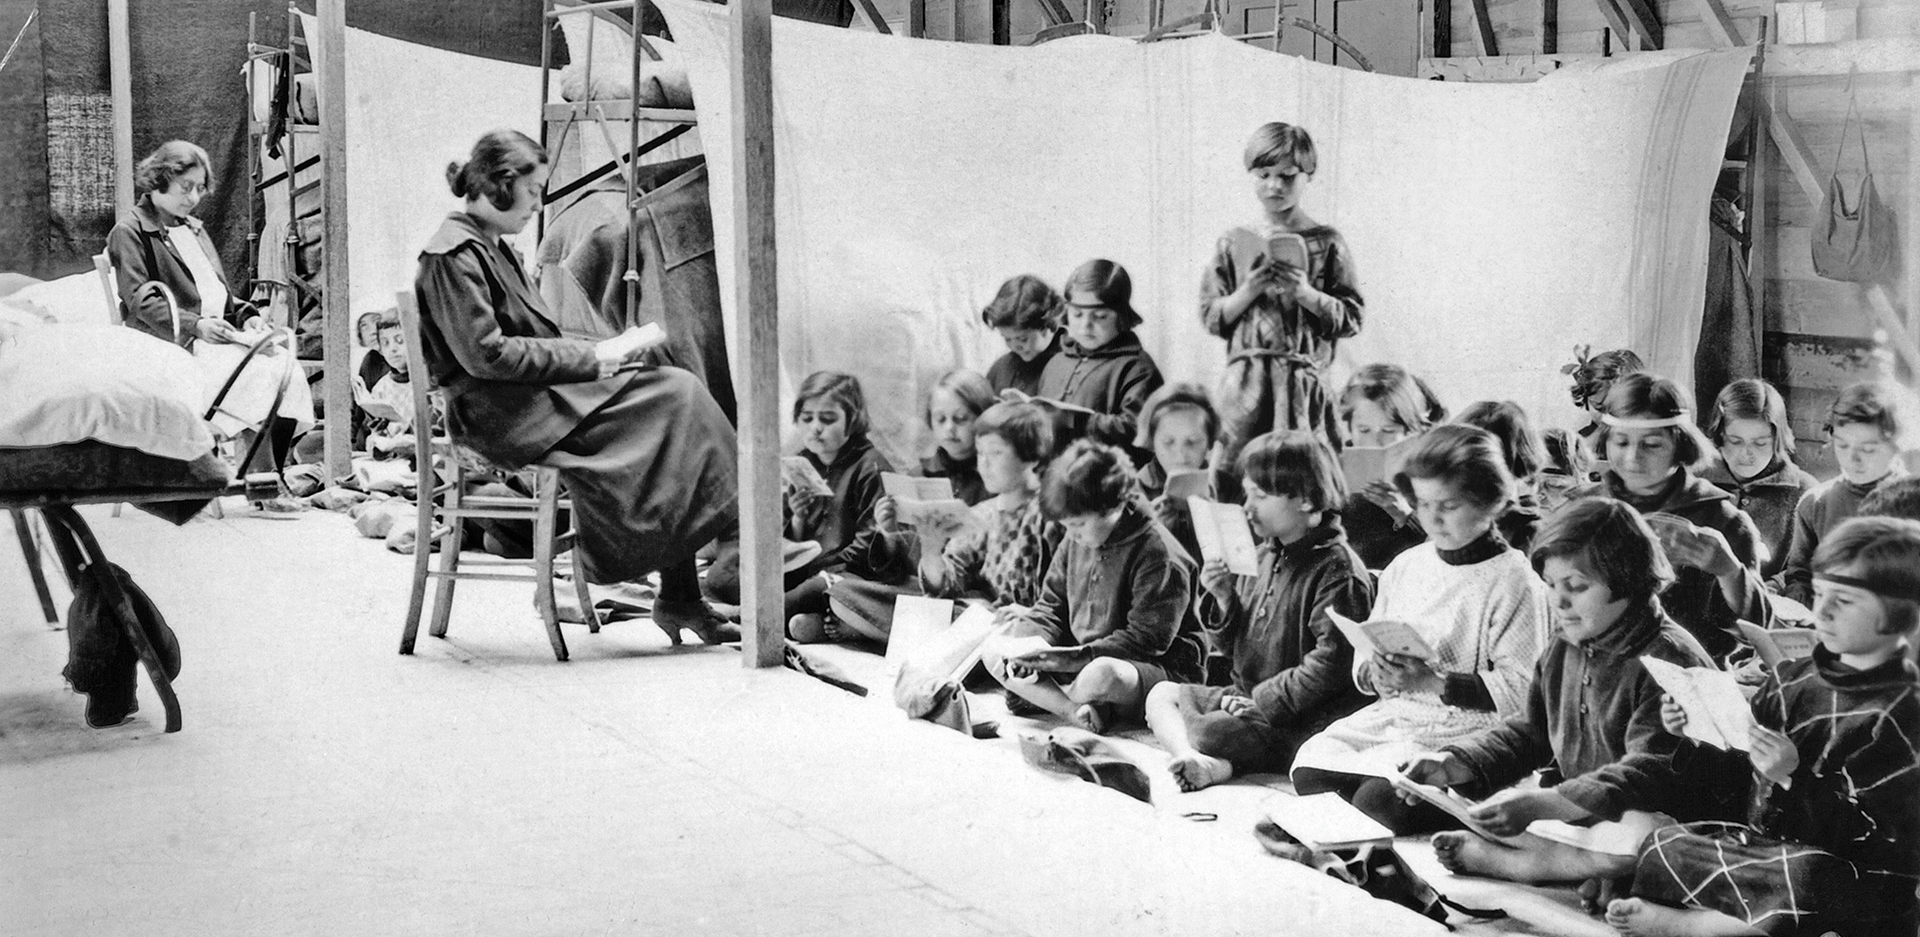 Προσφυγόπουλα σε σχολείο στην Ελλάδα, που δημιουργήθηκε με δωρεά του Near East Relief © Ευγενική παραχώρηση: Νear East Relief, The Rockefeller Archive Center.